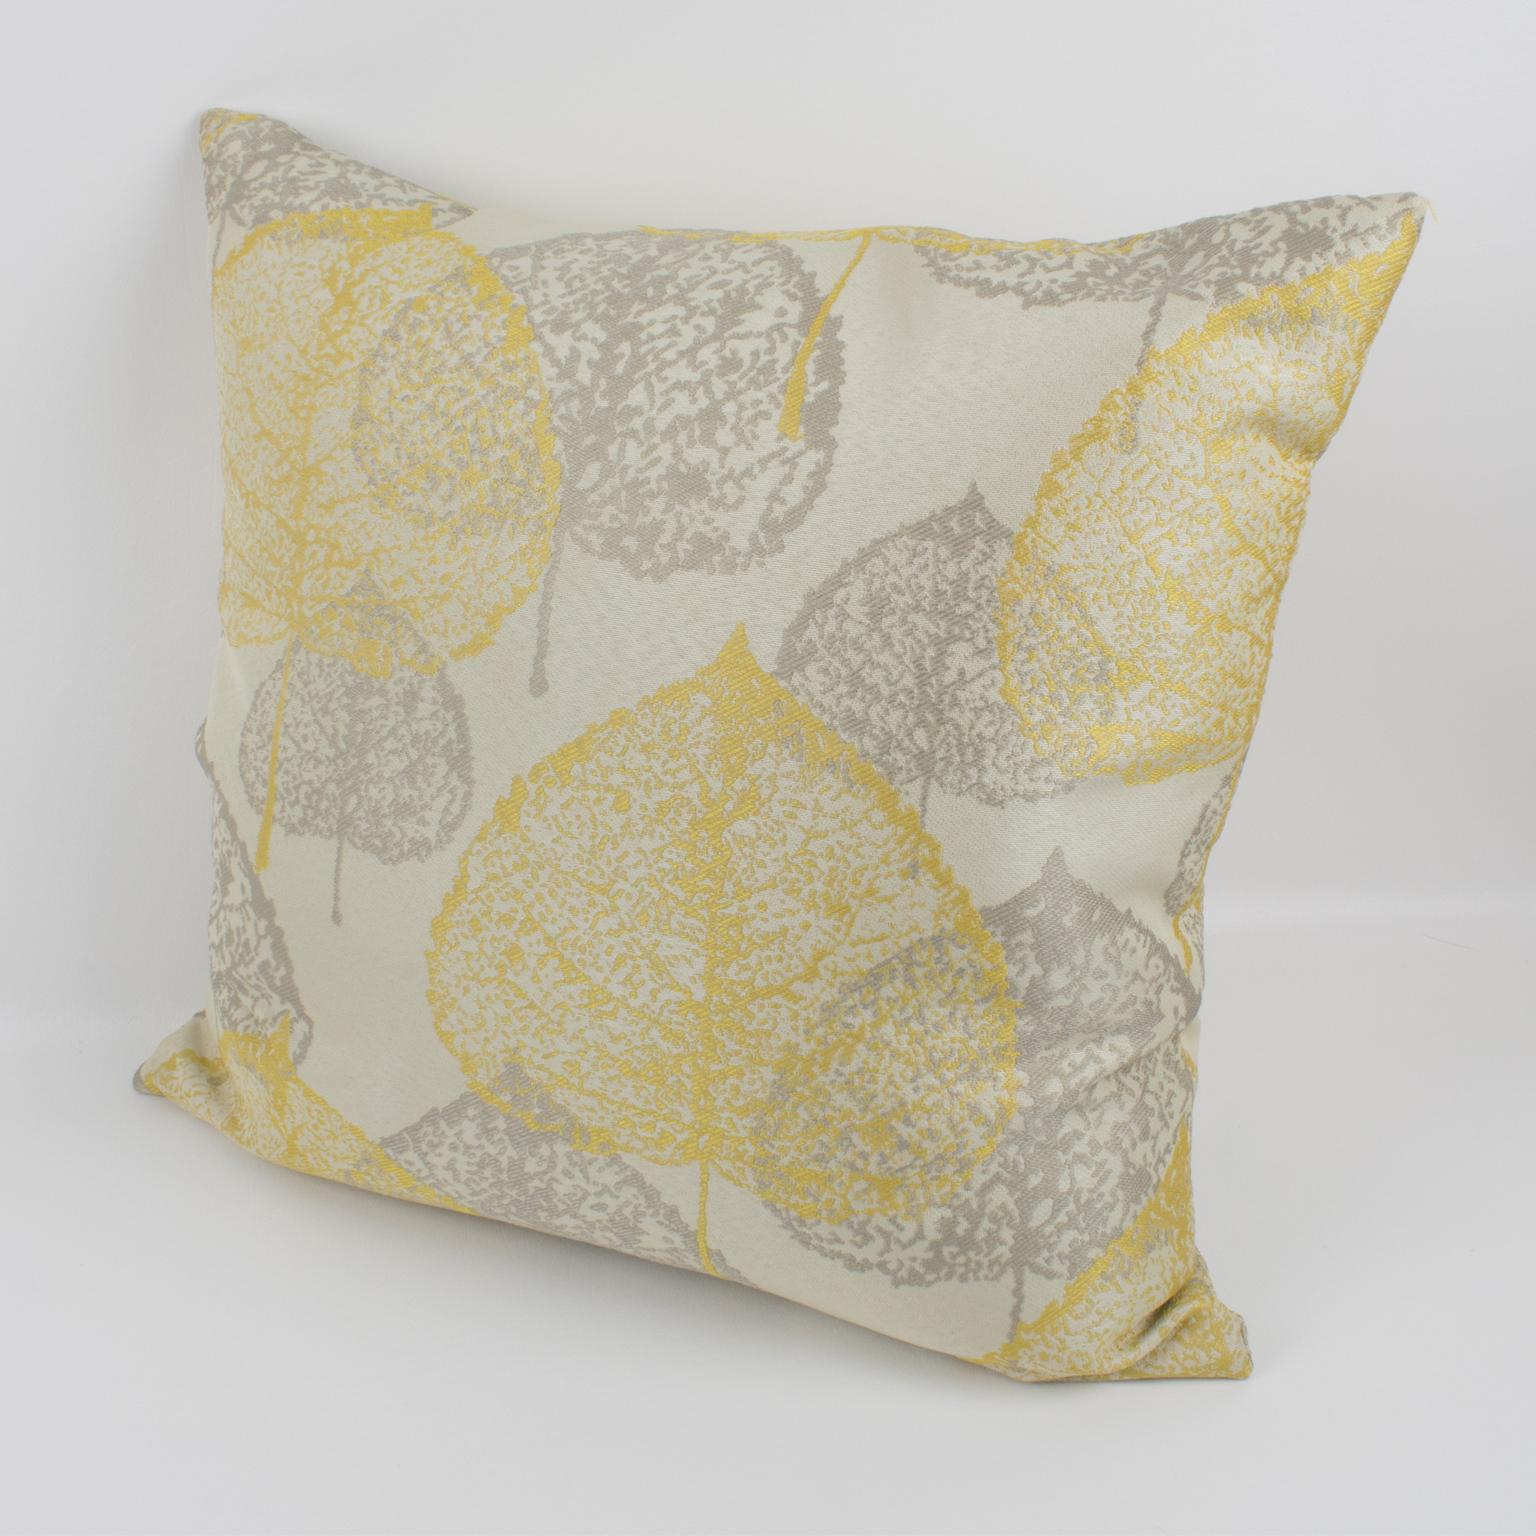 Contemporary Yellow Silver-Gray Damask Throw Pillow, a pair